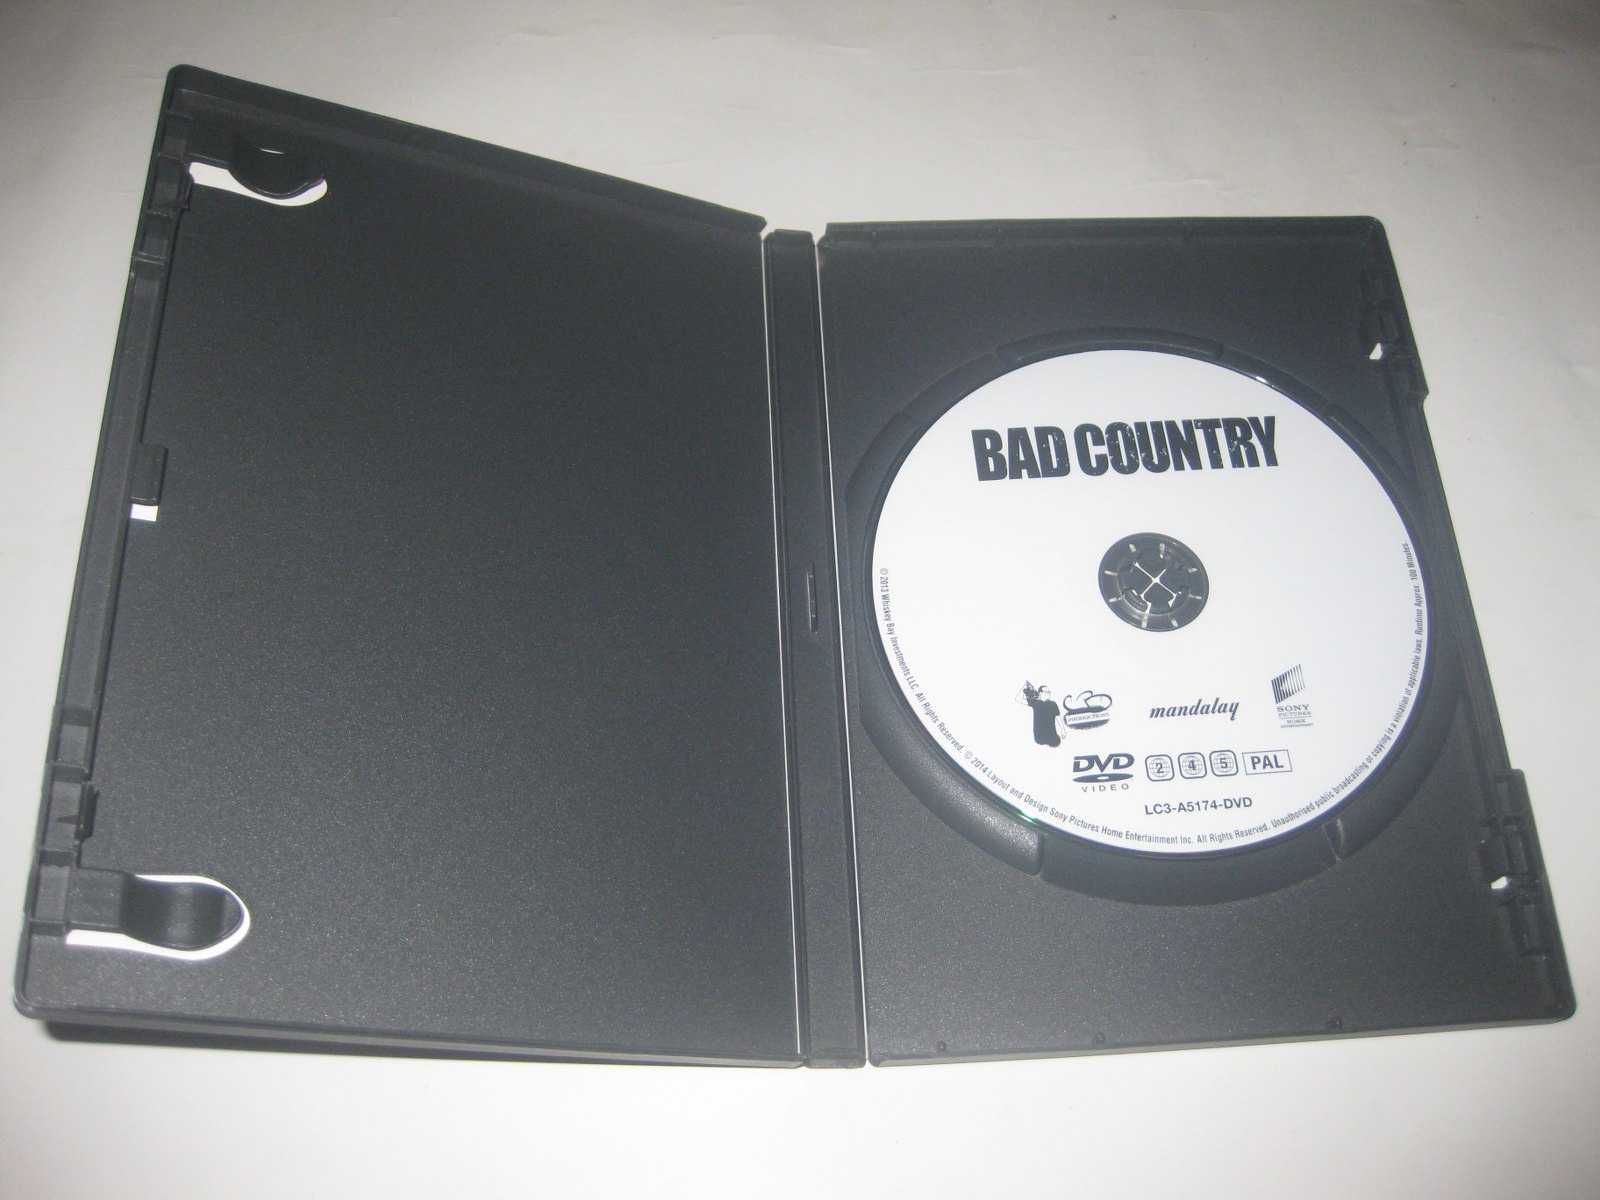 DVD "Cúmplice" com Willem Dafoe